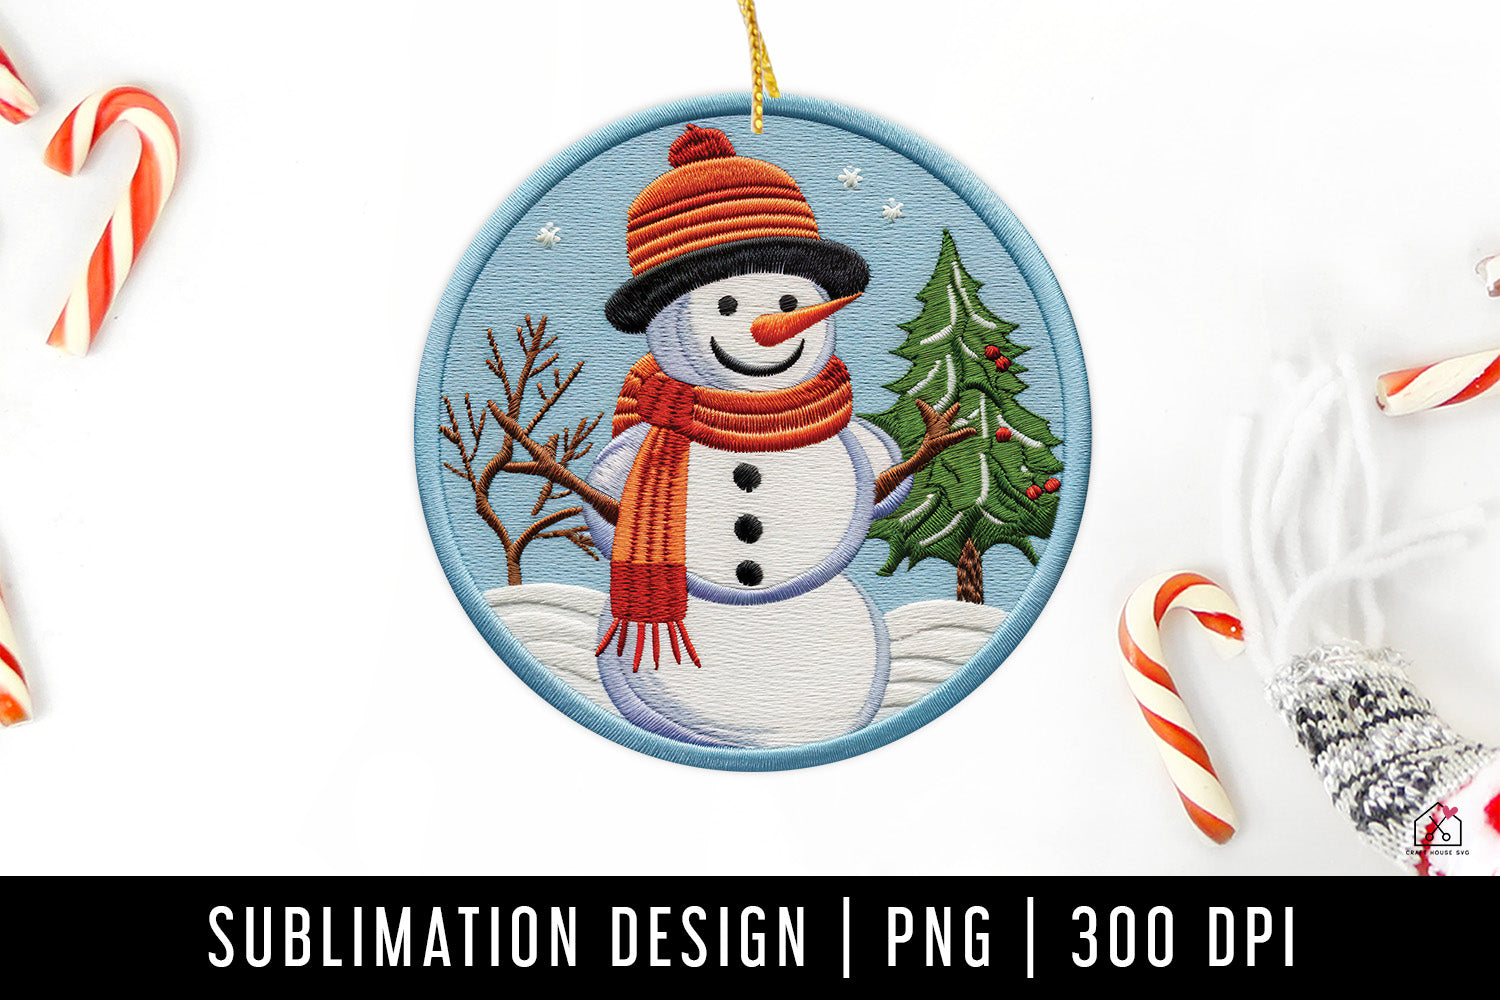 Snowman Christmas 3D Ornament Sublimation Design PNG